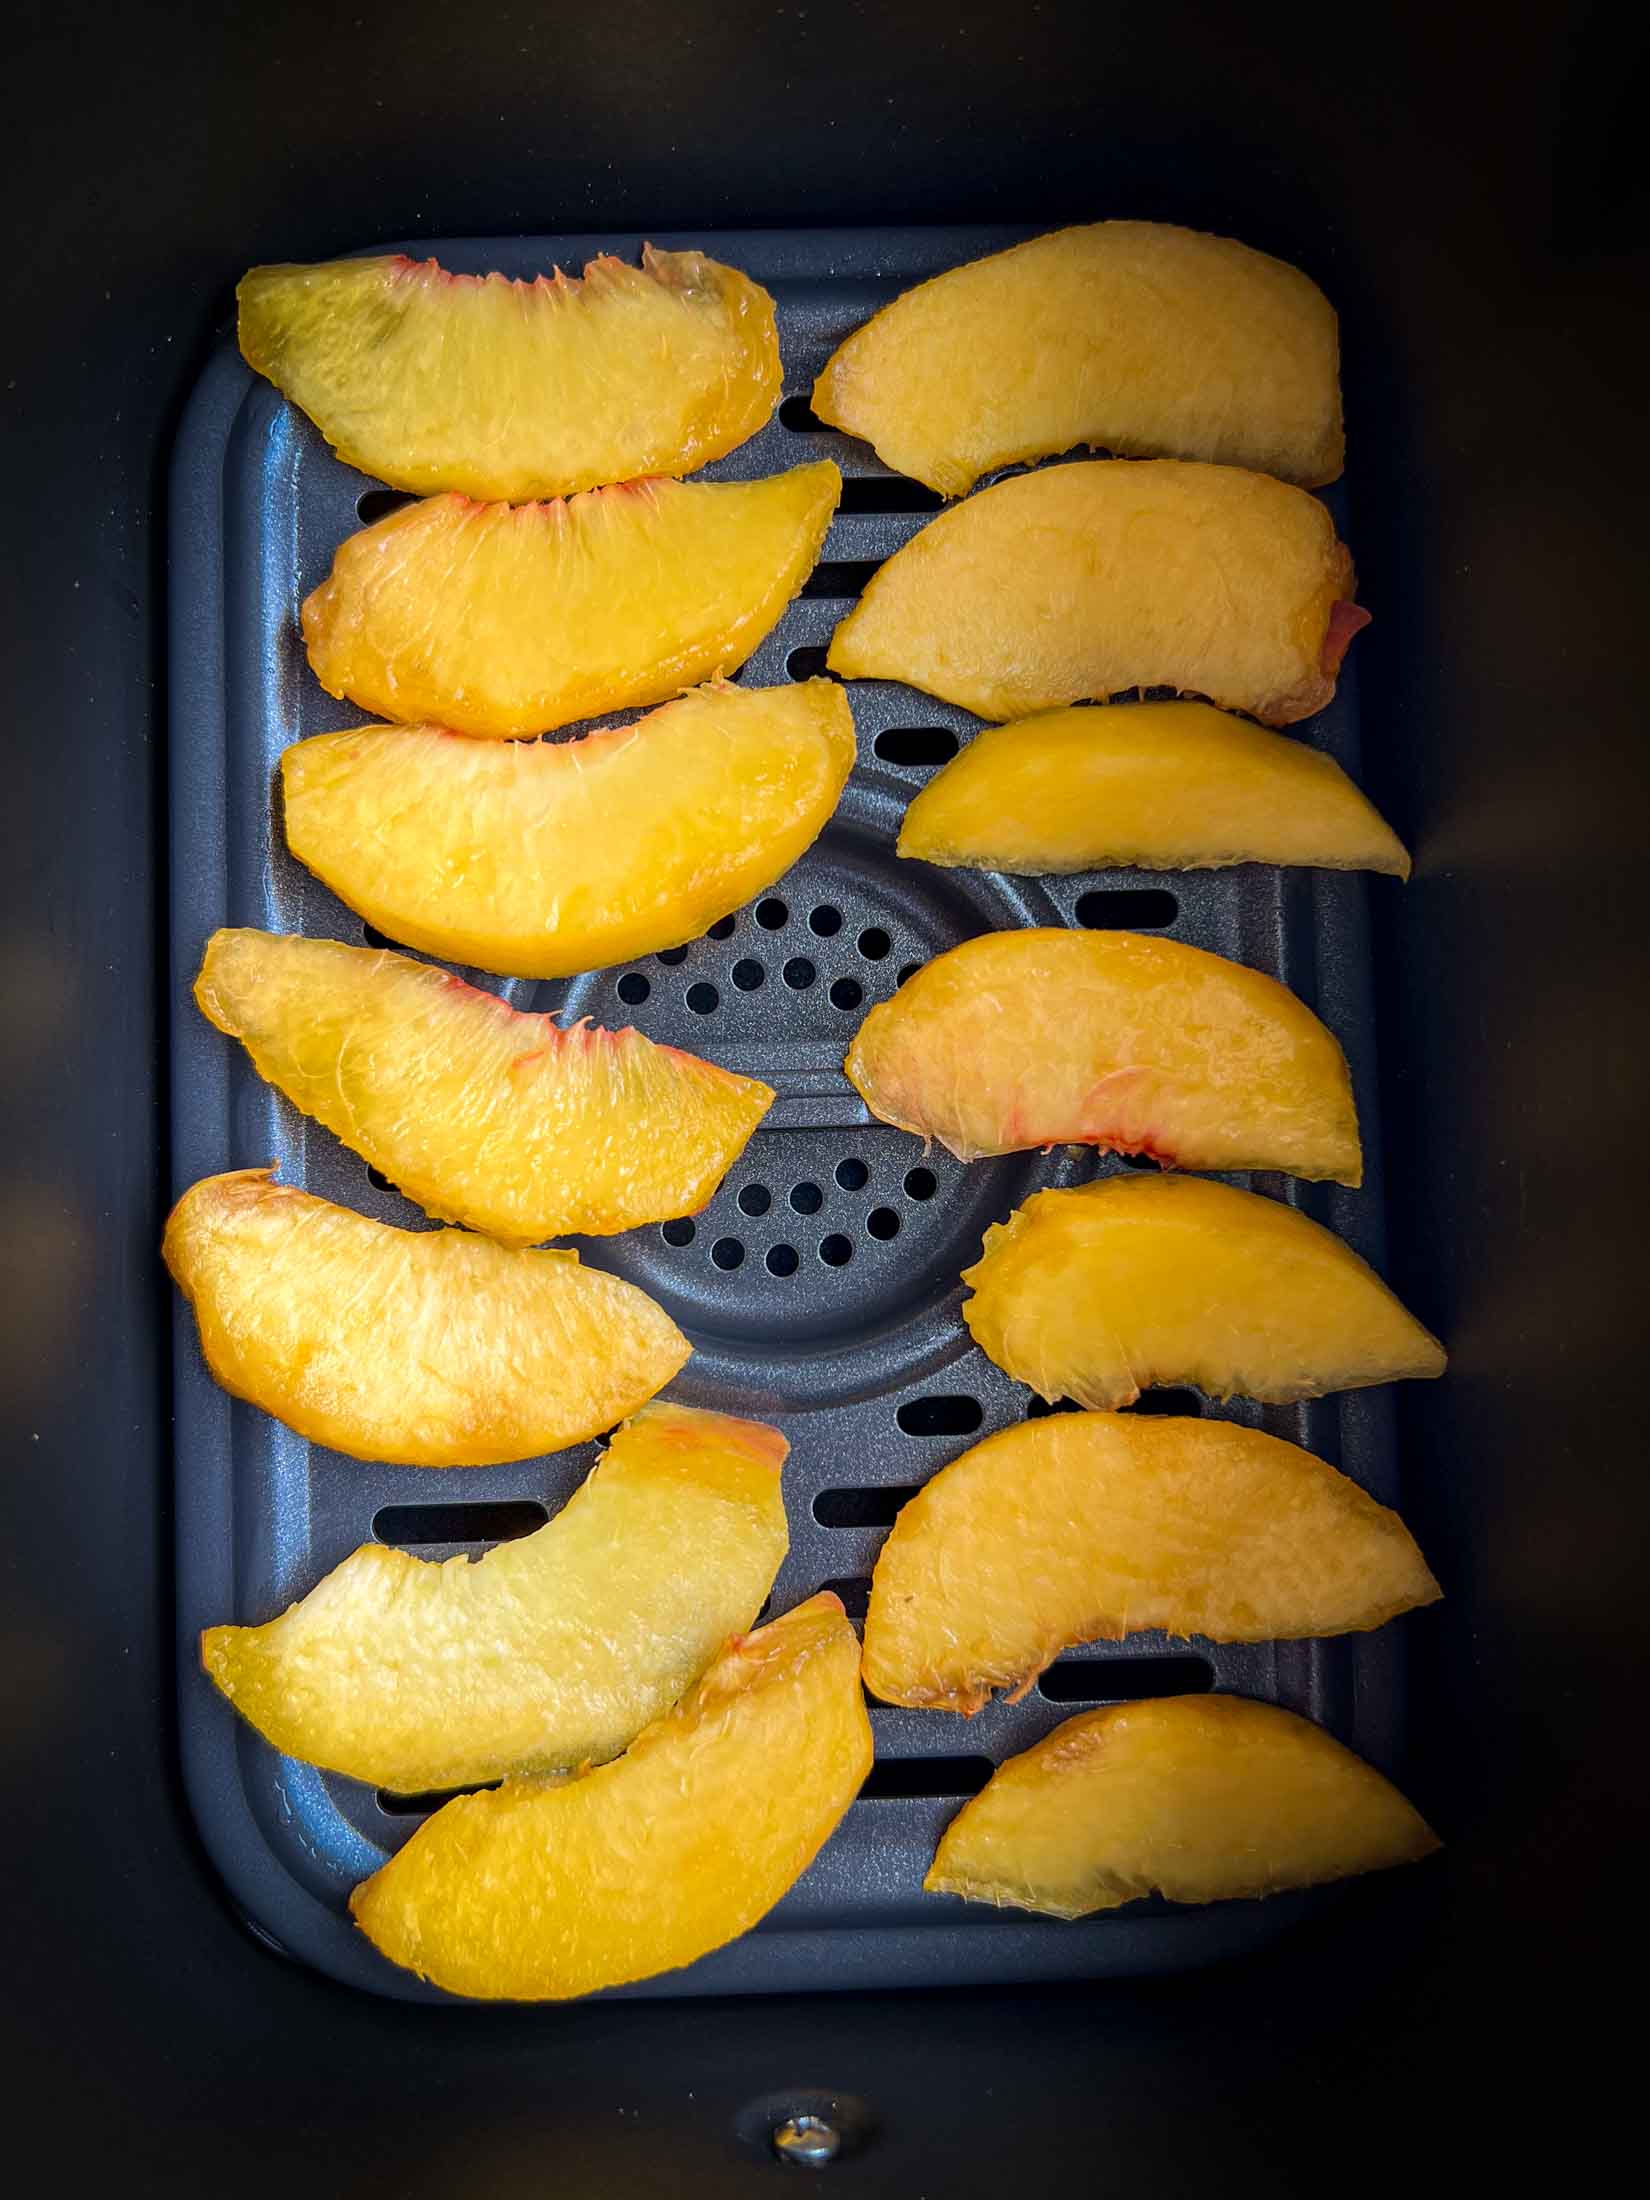 Fresh peaches arranged in an air fryer basket.